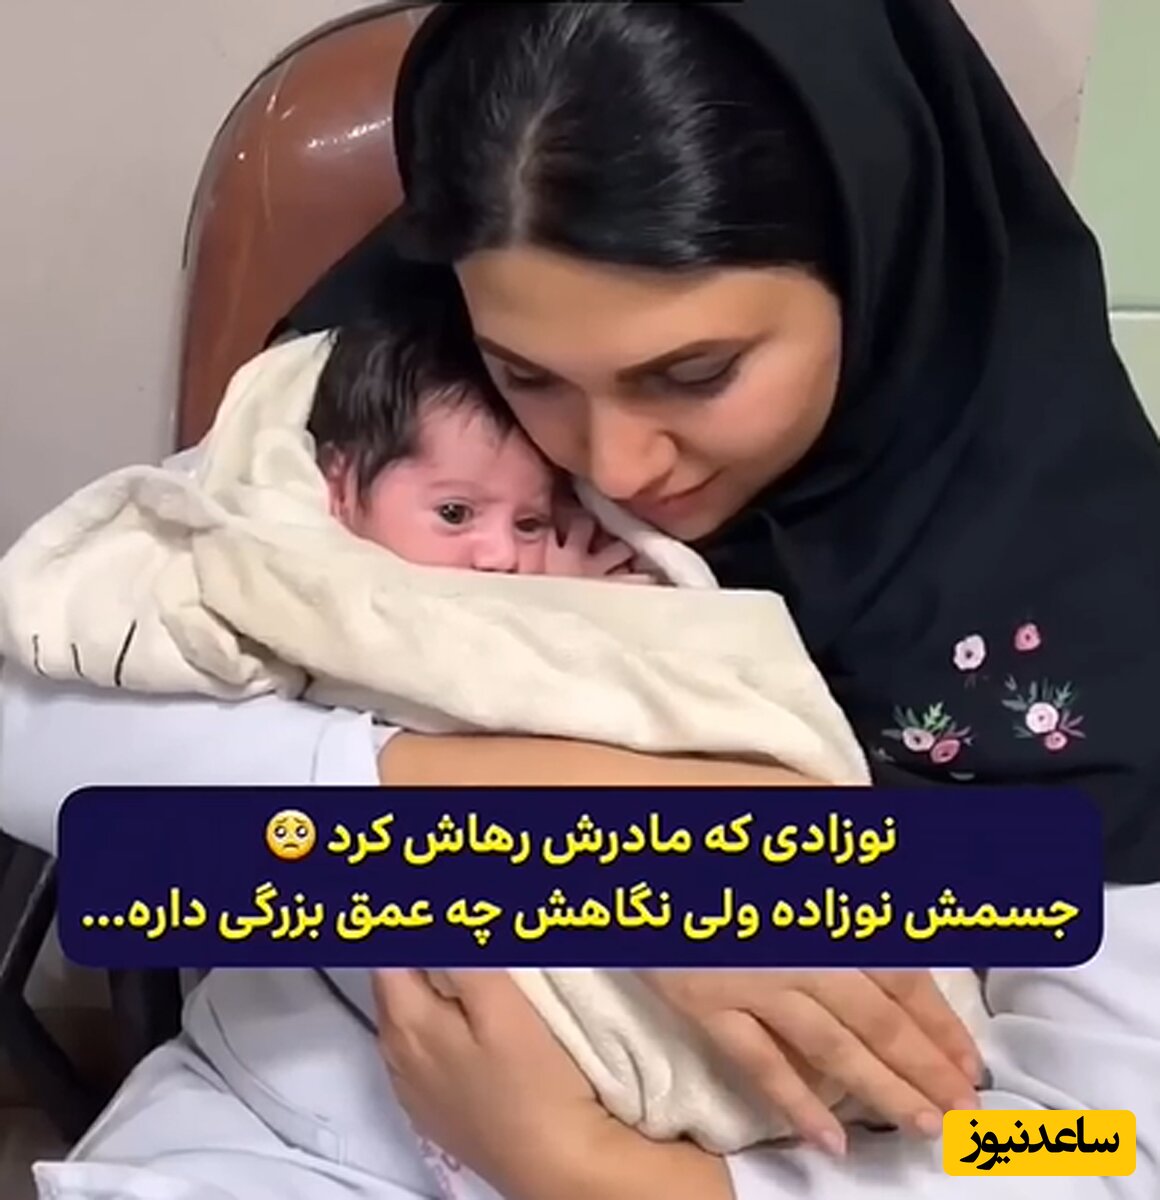 (فیلم) آغوش گرم یک پزشک مهربان برای نوزادی که مادرش او را رها کرده و رفته / چه غمی توی چشمای بچه هست ...